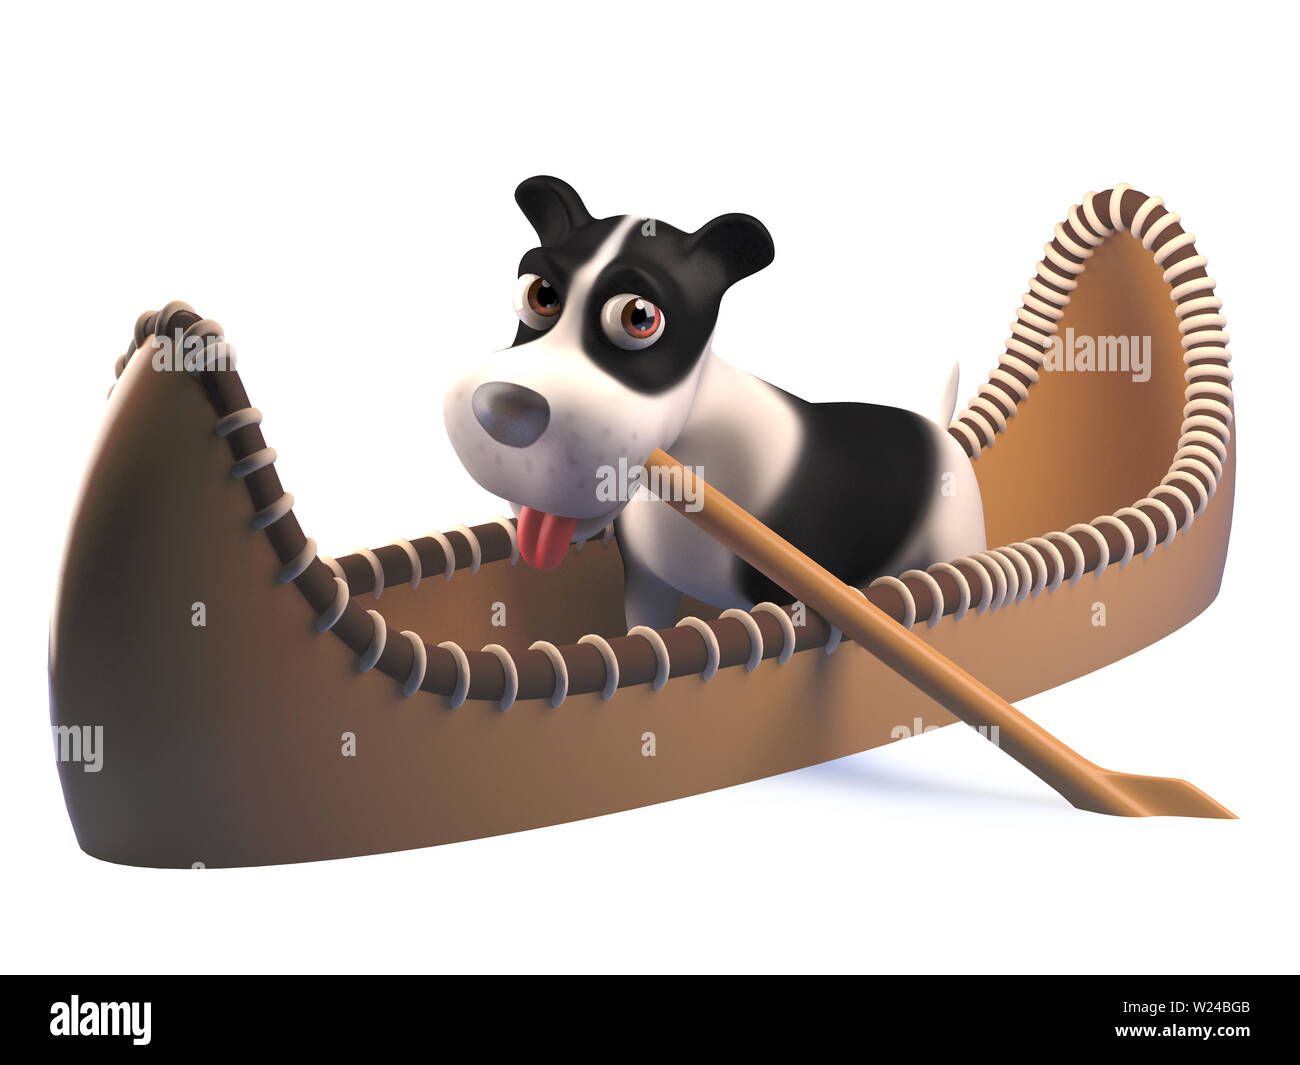 Imagen presentada de una divertida caricatura cachorro de perro en un kayak canoa, ilustración 3d Foto de stock